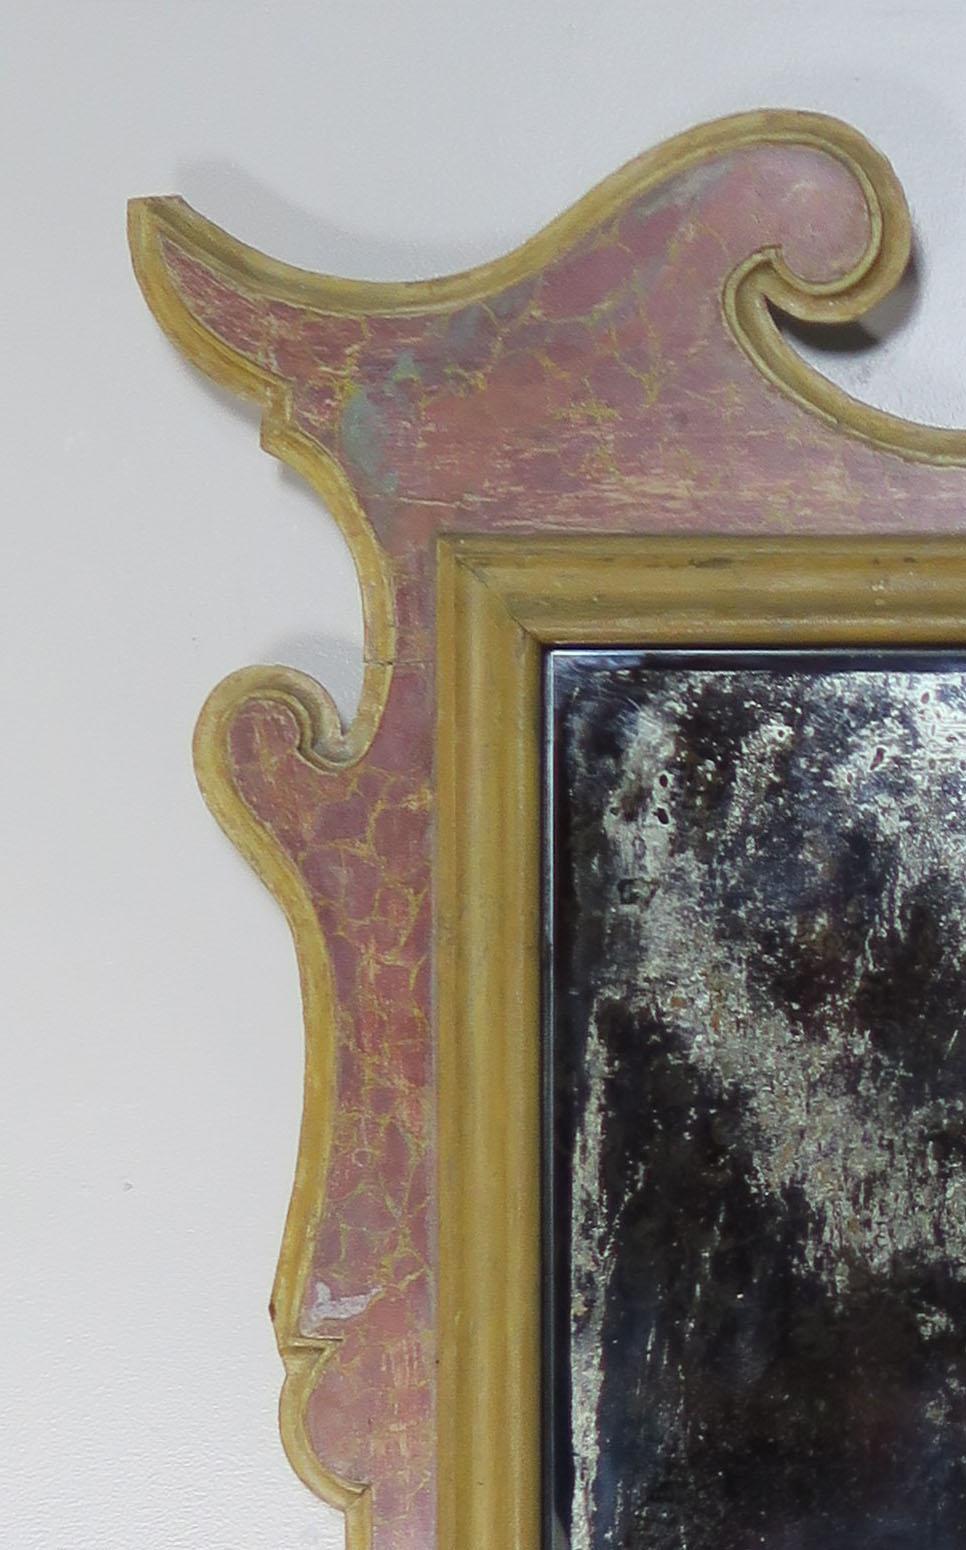 Miroir italien peint en faux marbre avec un insert en miroir vieilli dans un cadre de forme unique. Peinture usée partout.